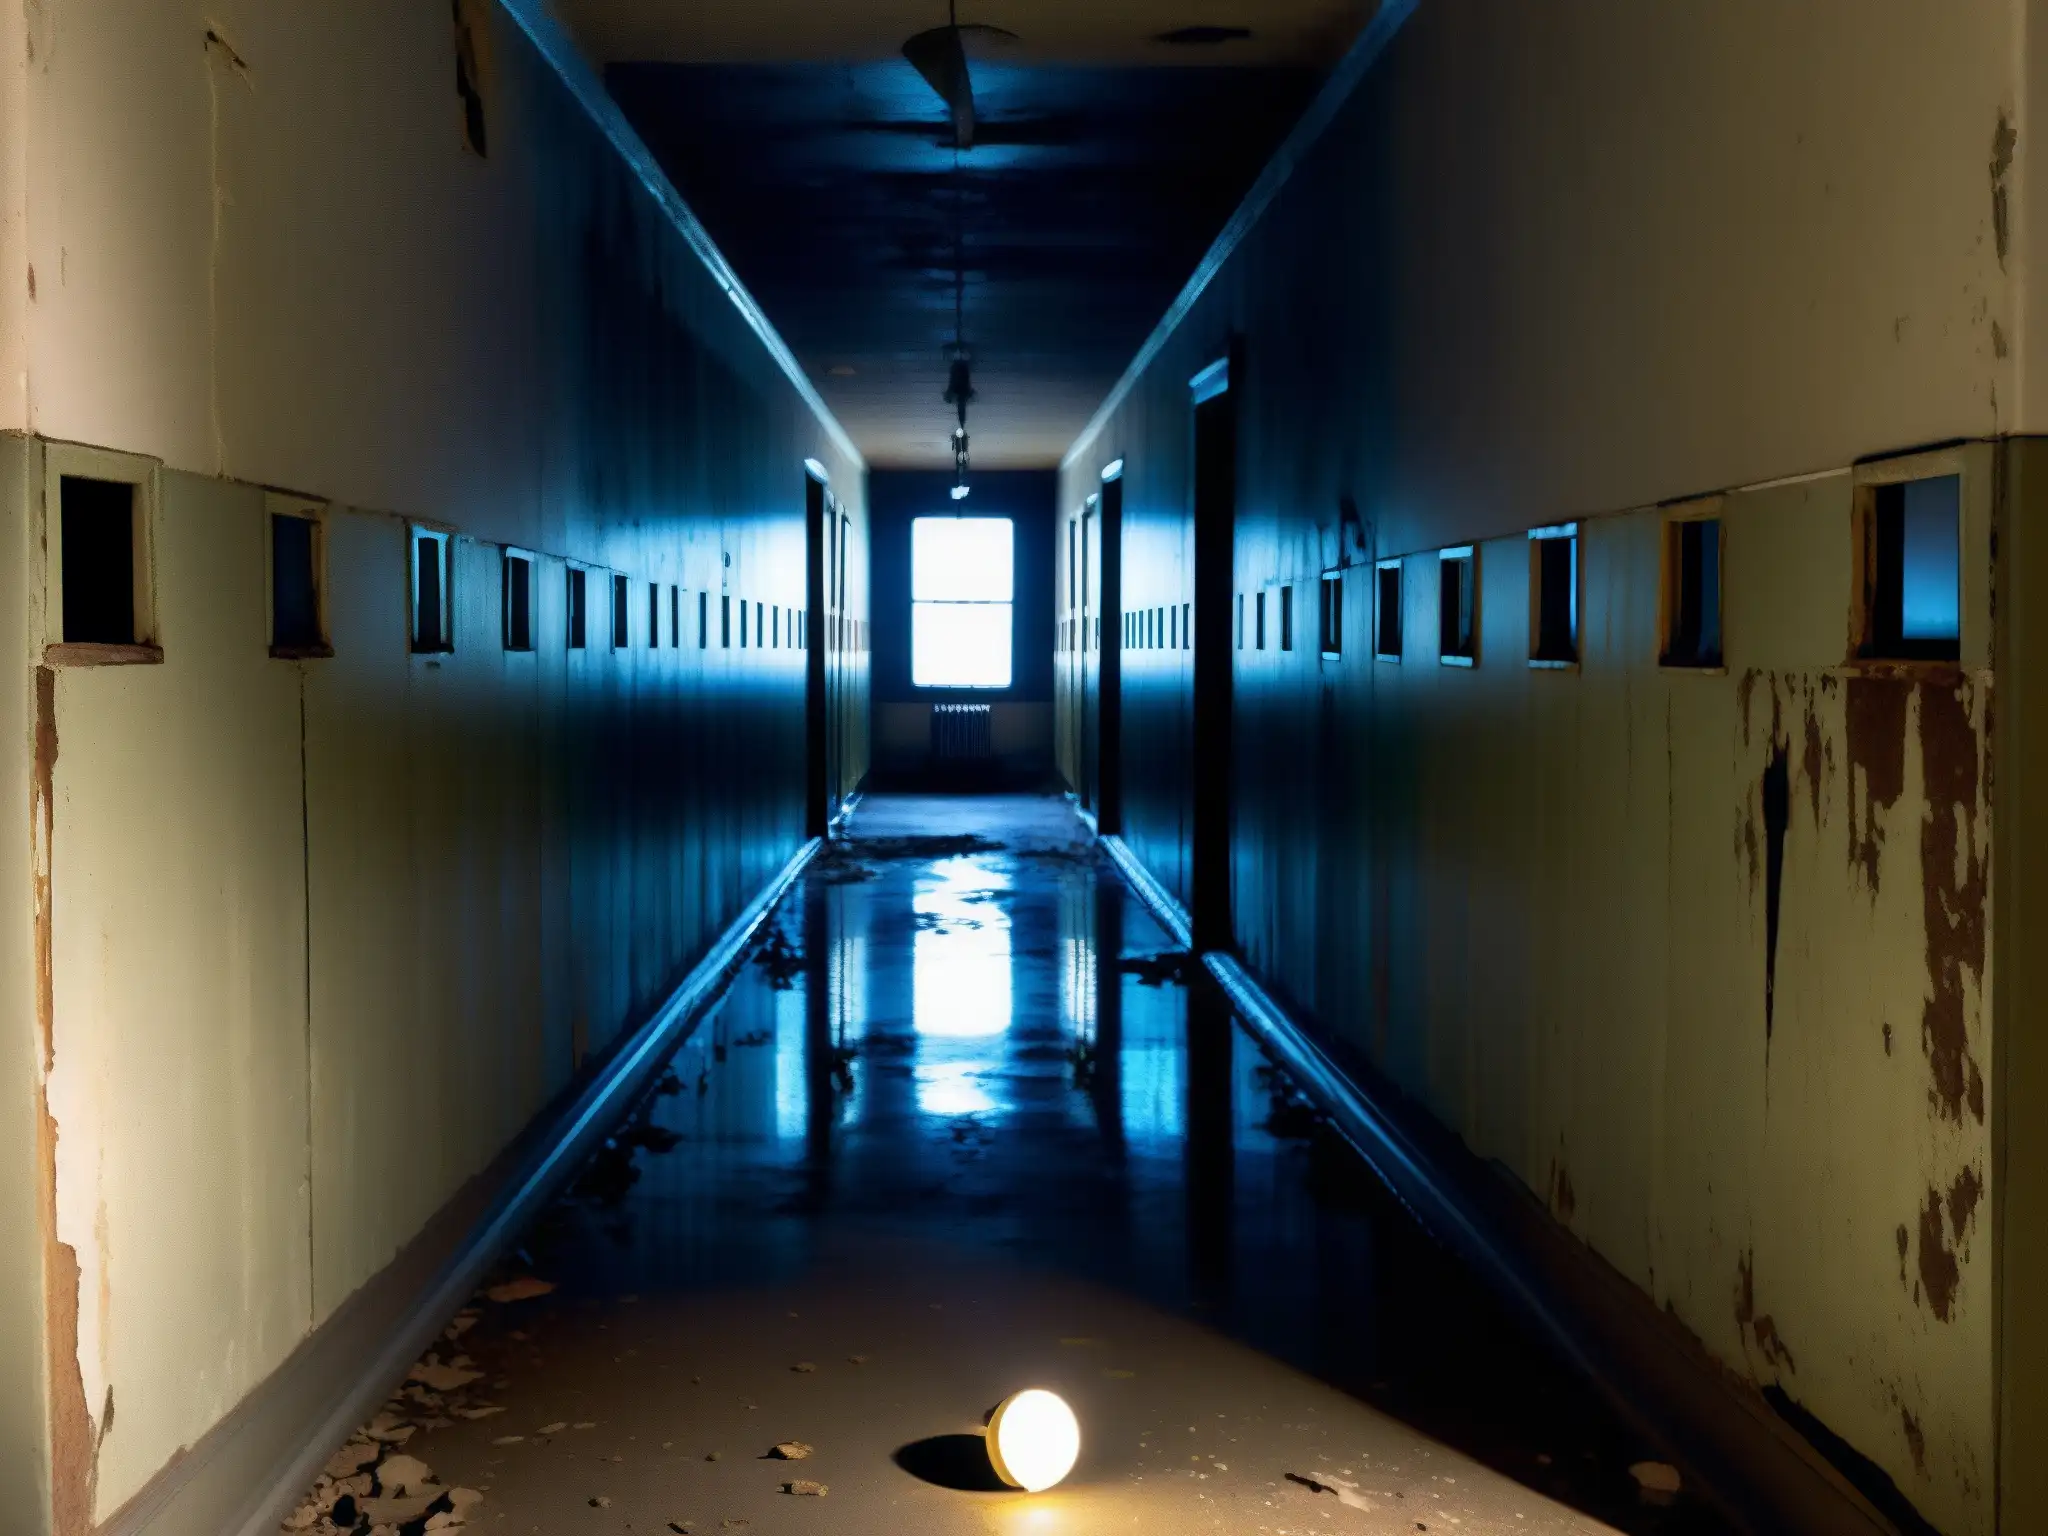 Un pasillo abandonado de un asilo en blanco y negro, con una atmósfera de fascinación por lo macabro